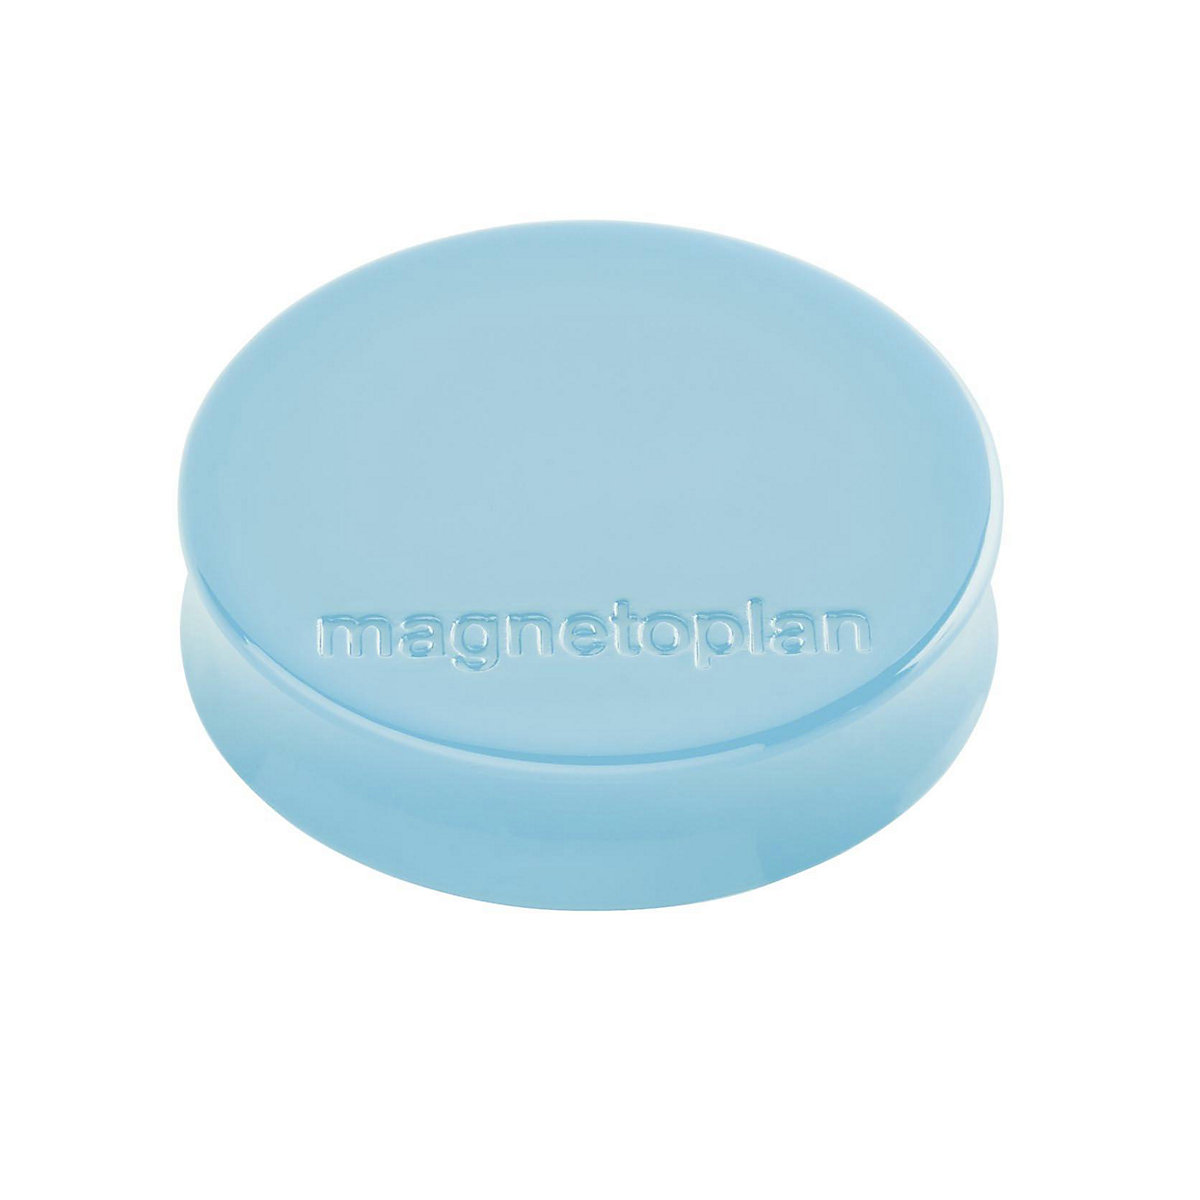 Ergo magnet – magnetoplan, Ø 30 mm, pack of 60, baby blue-10